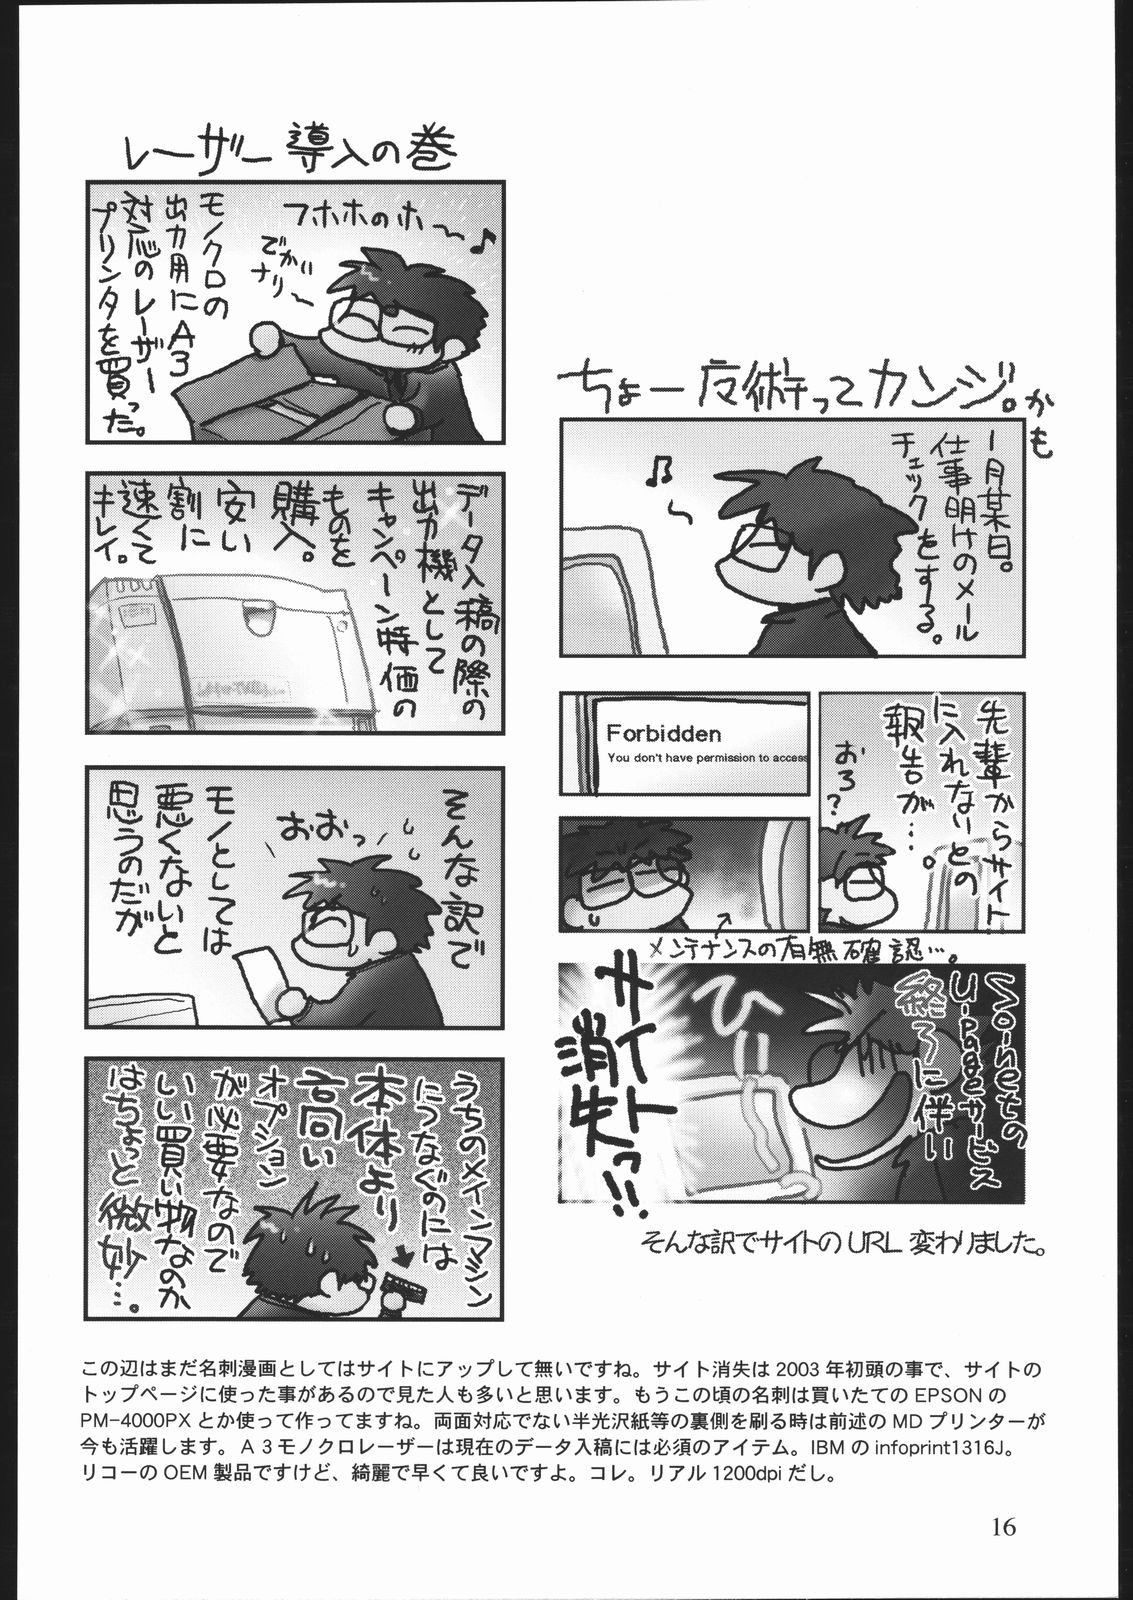 [井ノ頭研究所] 雑記帳2004冬